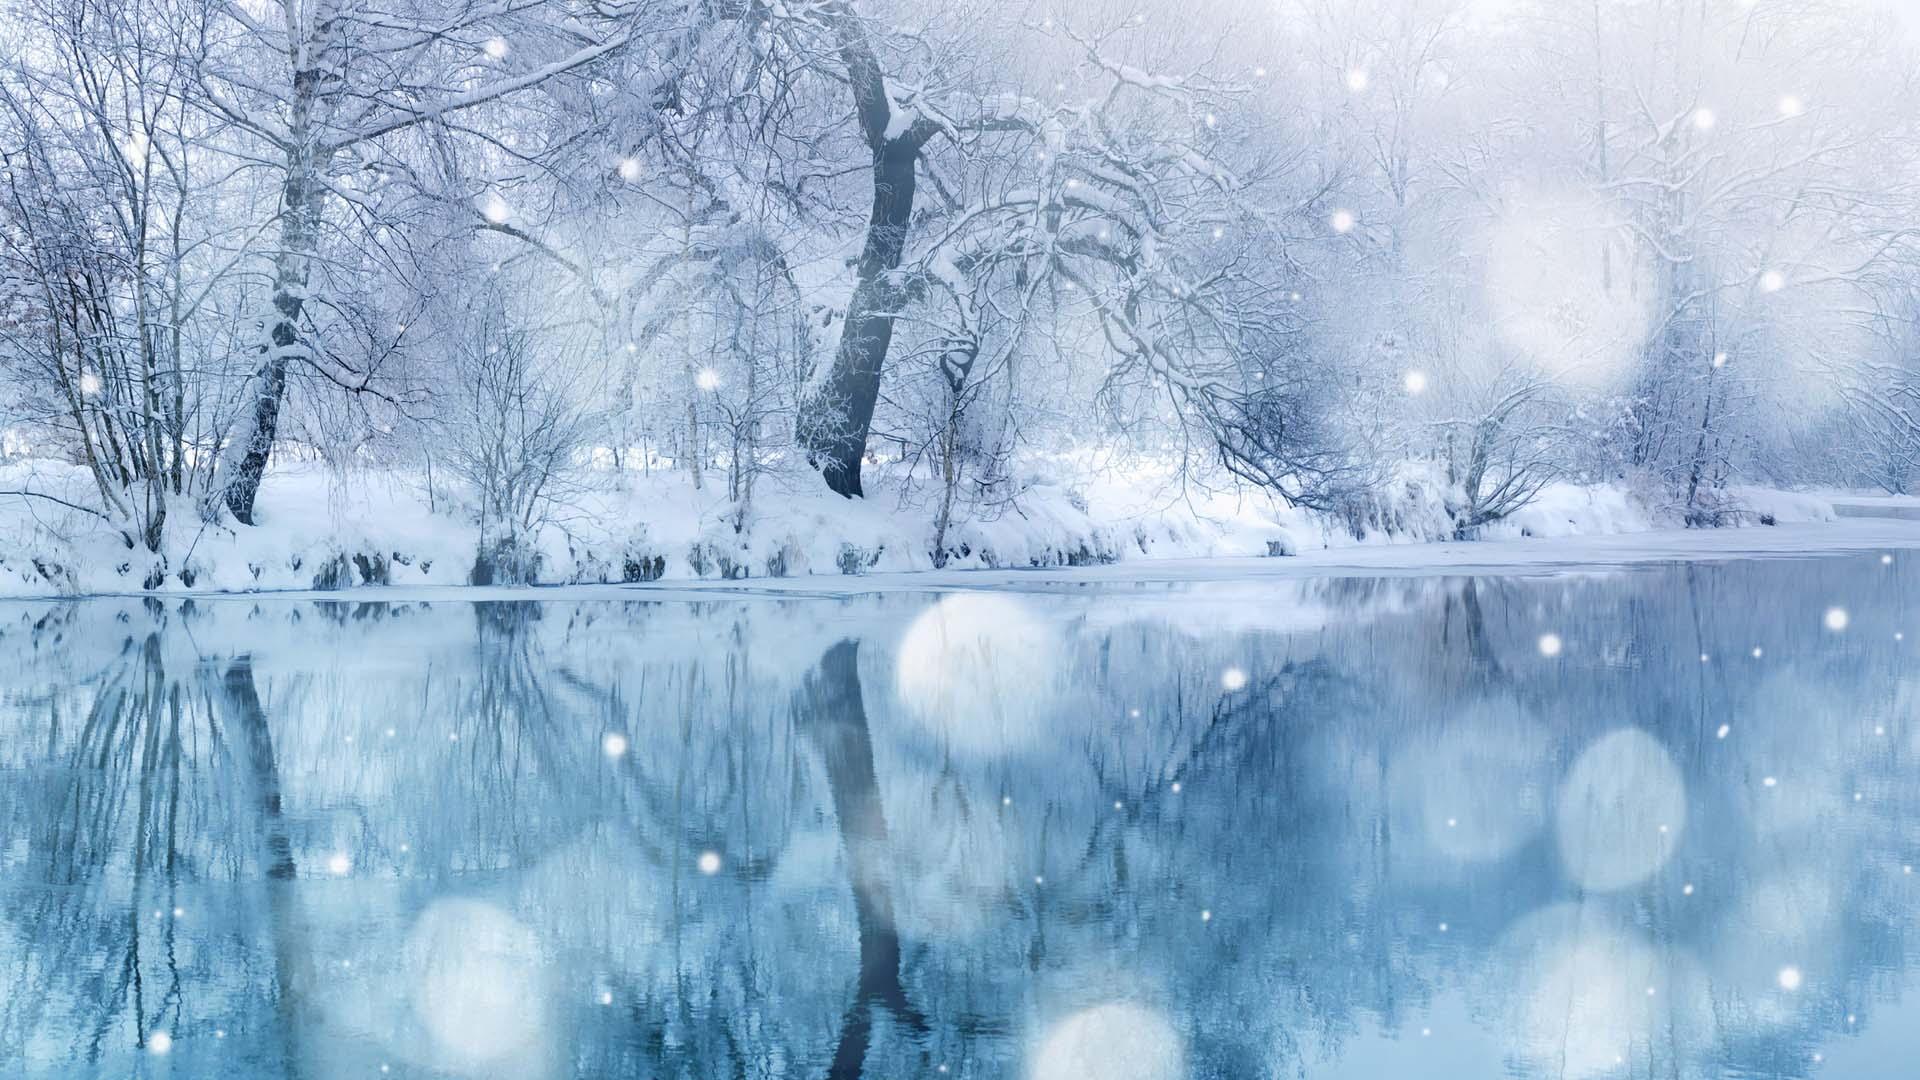 Картинки фон зима снег (46 фото) » Картинки и статусы про окружающий мир  вокруг